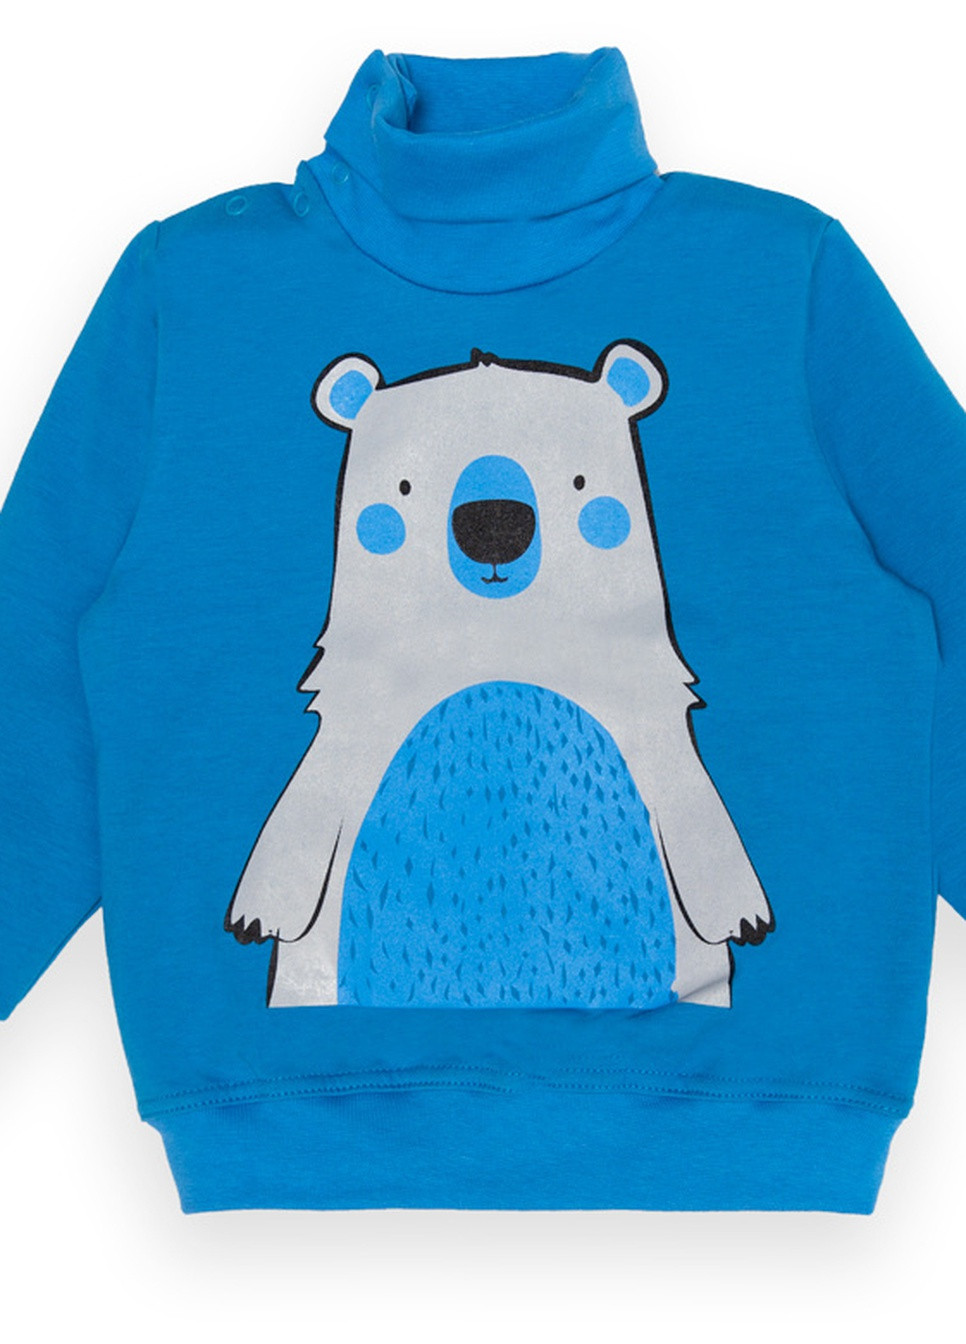 Синий зимний детский свитер для мальчика sv-22-2-8 *bear* Габби